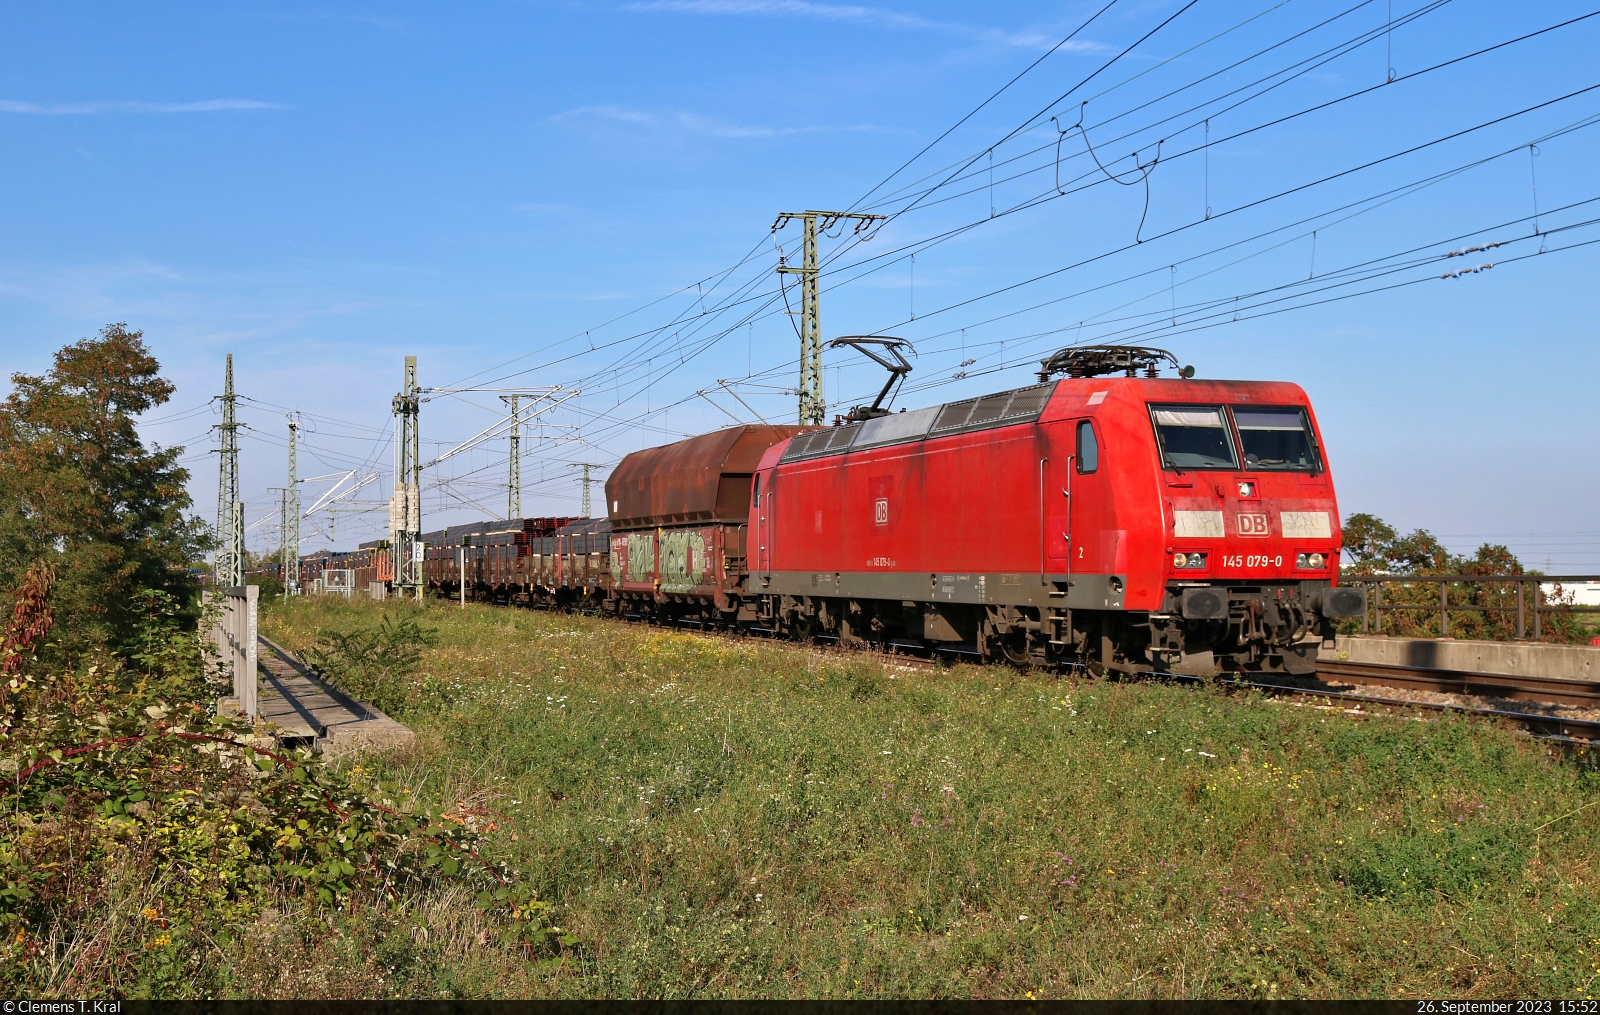 EZ mit 145 079-0 überquert in Halle (Saale) die Leipziger Chaussee (B 6) Richtung Abzweig Thüringer Bahn.

🧰 DB Cargo
🕓 26.9.2023 | 15:52 Uhr